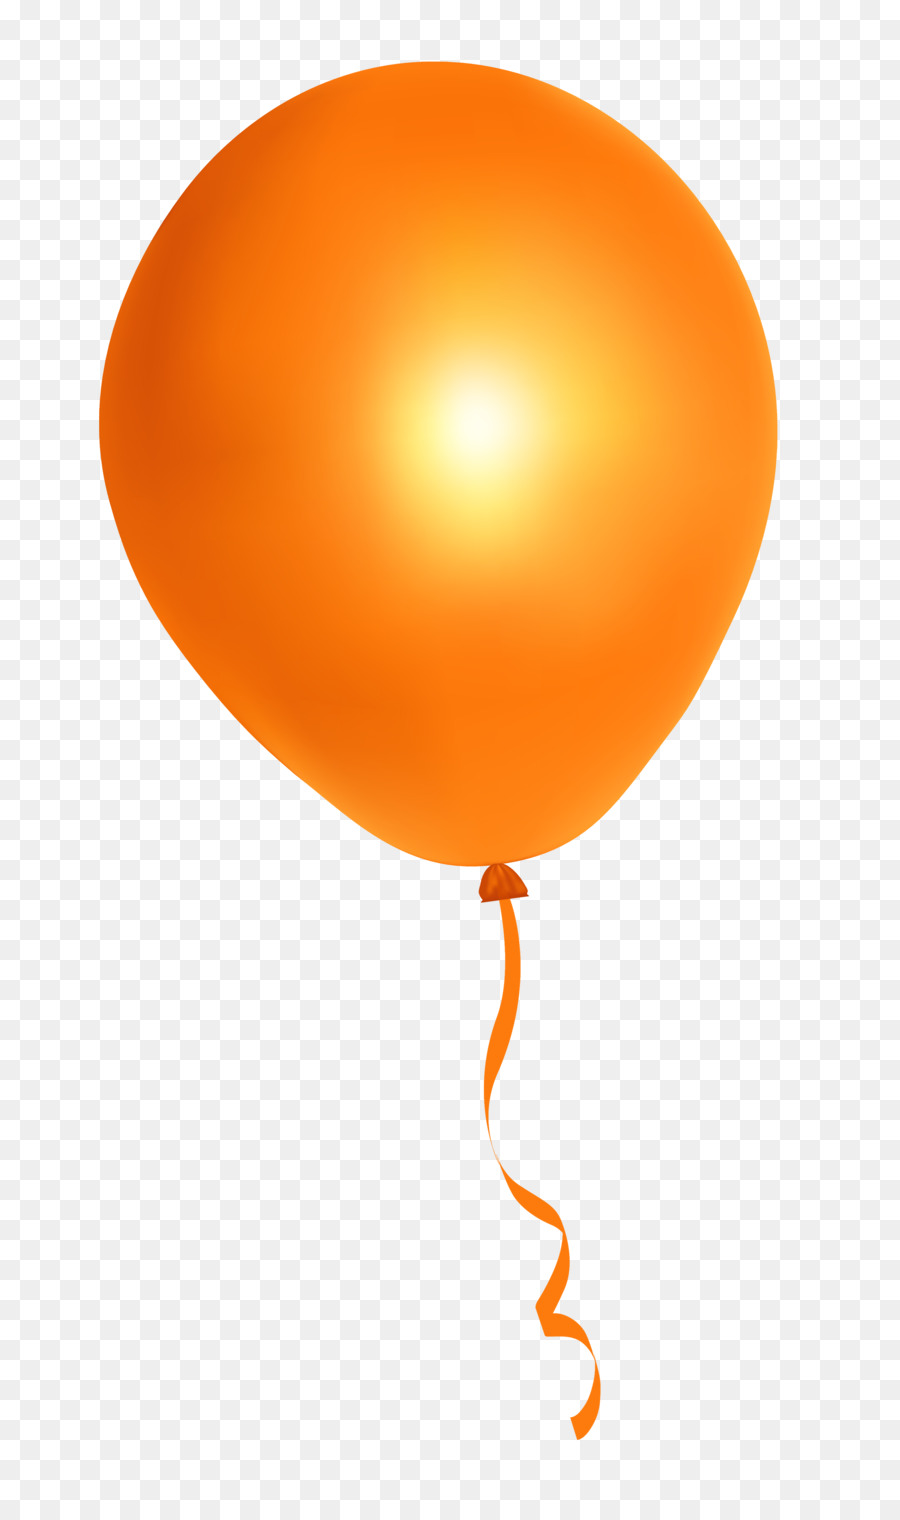 Balloon Orange - Orange Balloon png download - 2224*3720 - Free Transparent Balloon png Download.